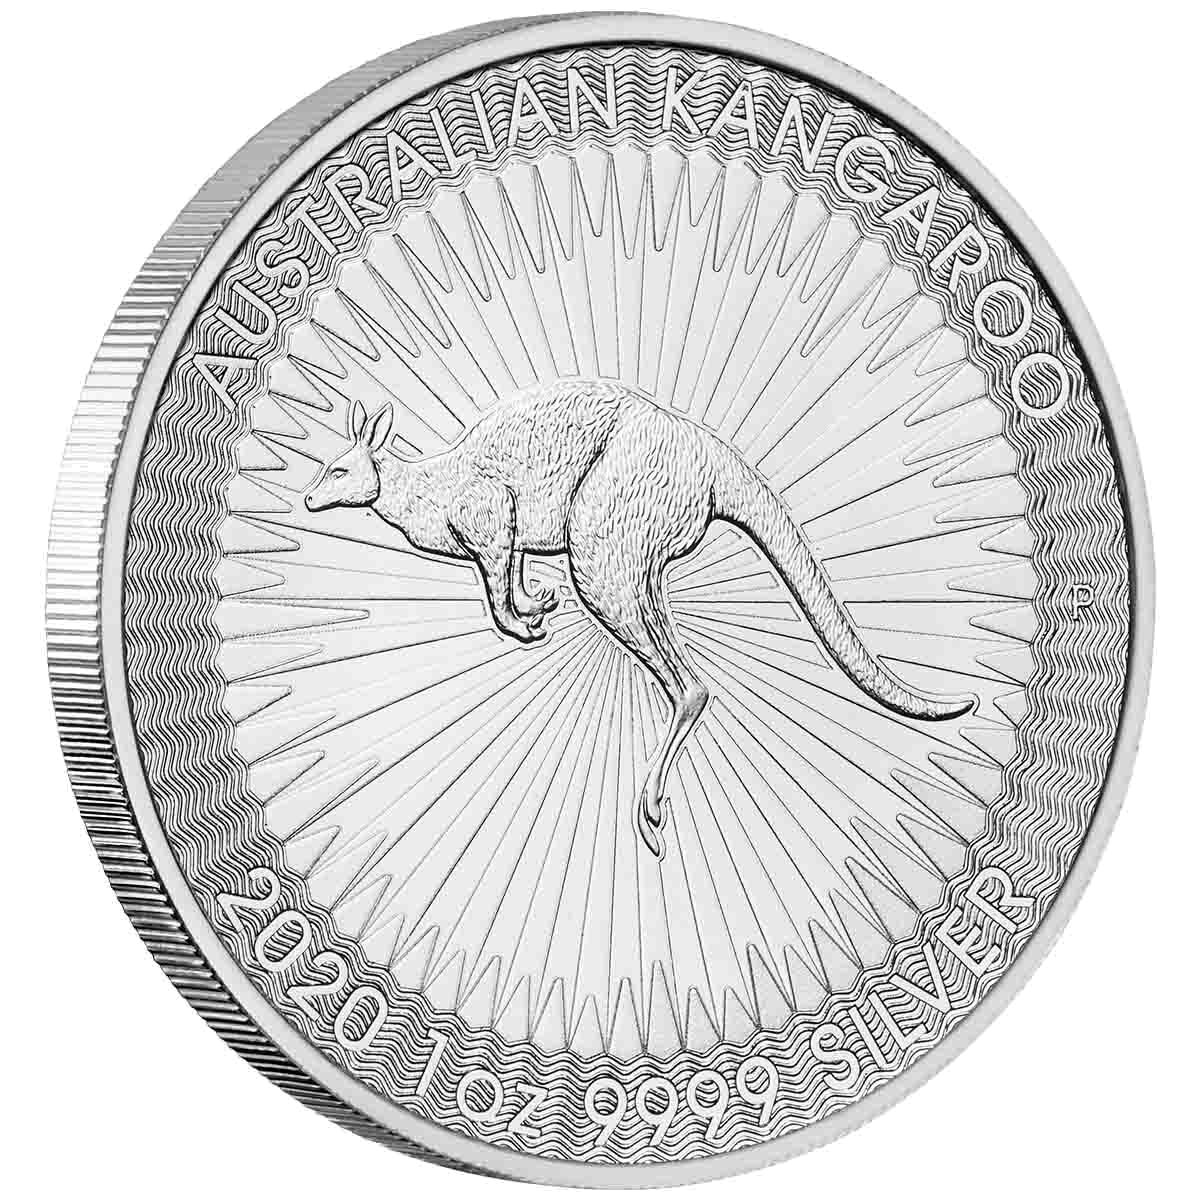 2020 $1 Kangaroo 1oz Silver Brilliant Uncirculated Coin